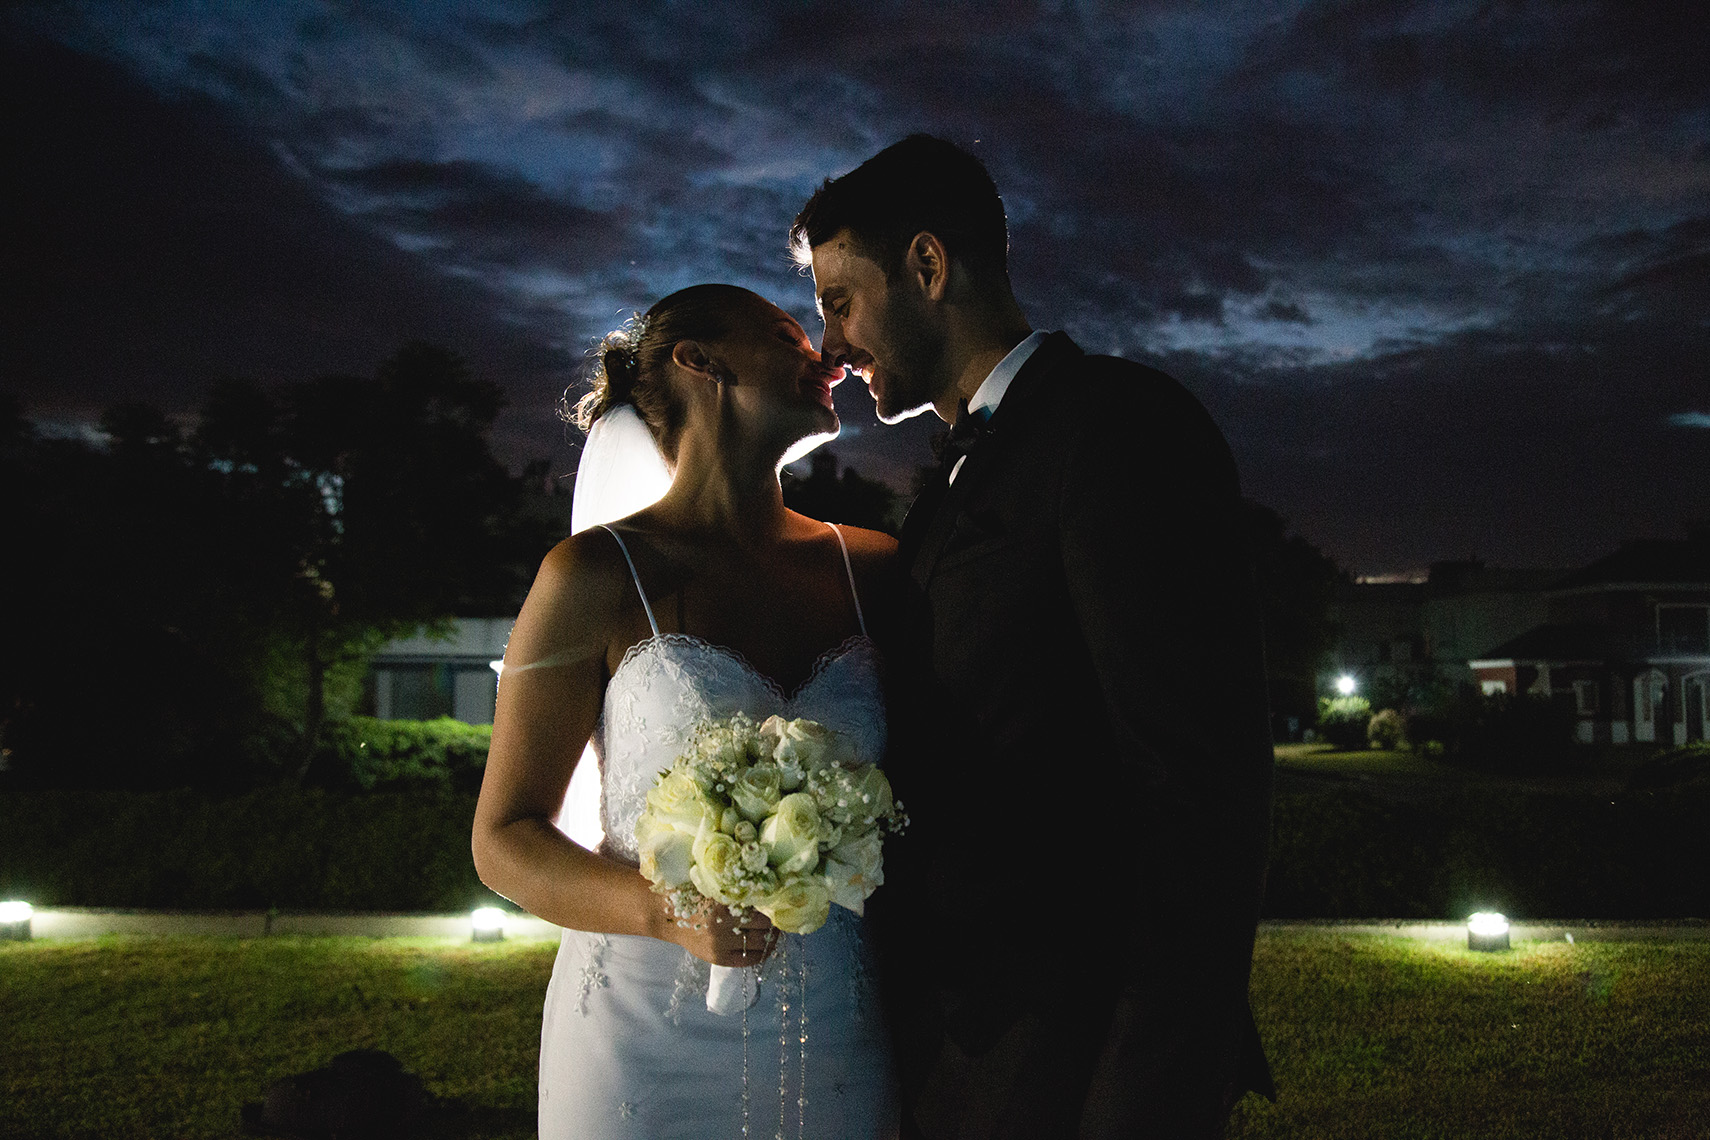 Fotos de la boda de Luisi y Maxi en Rosario realizadas por Bucle Fotografias Flor Bosio y Caro Clerici